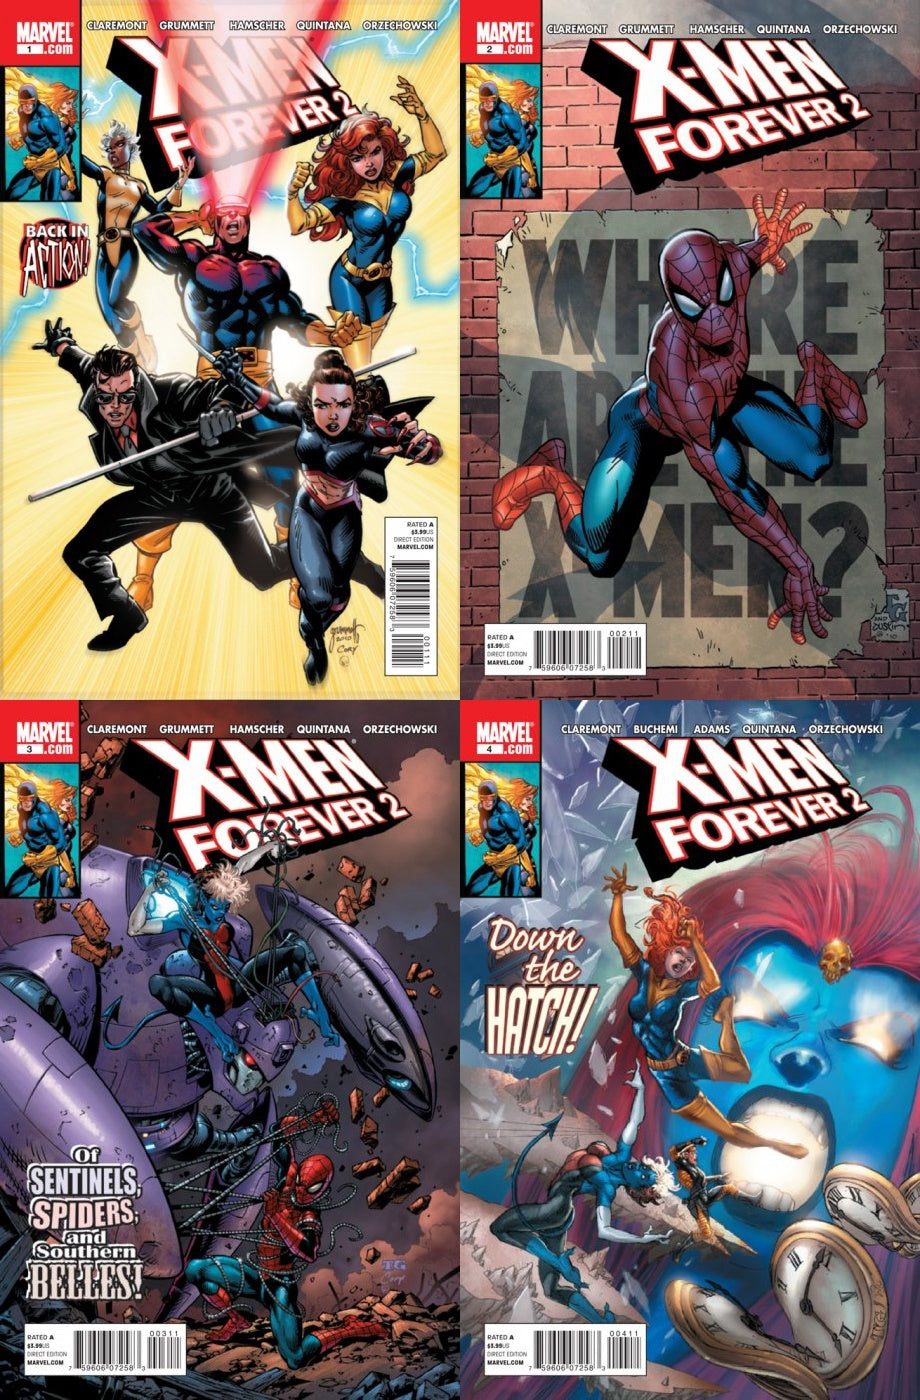 X-Men Forever 2 #1-4 (2010-2011) Marvel Comics - 4 Comics